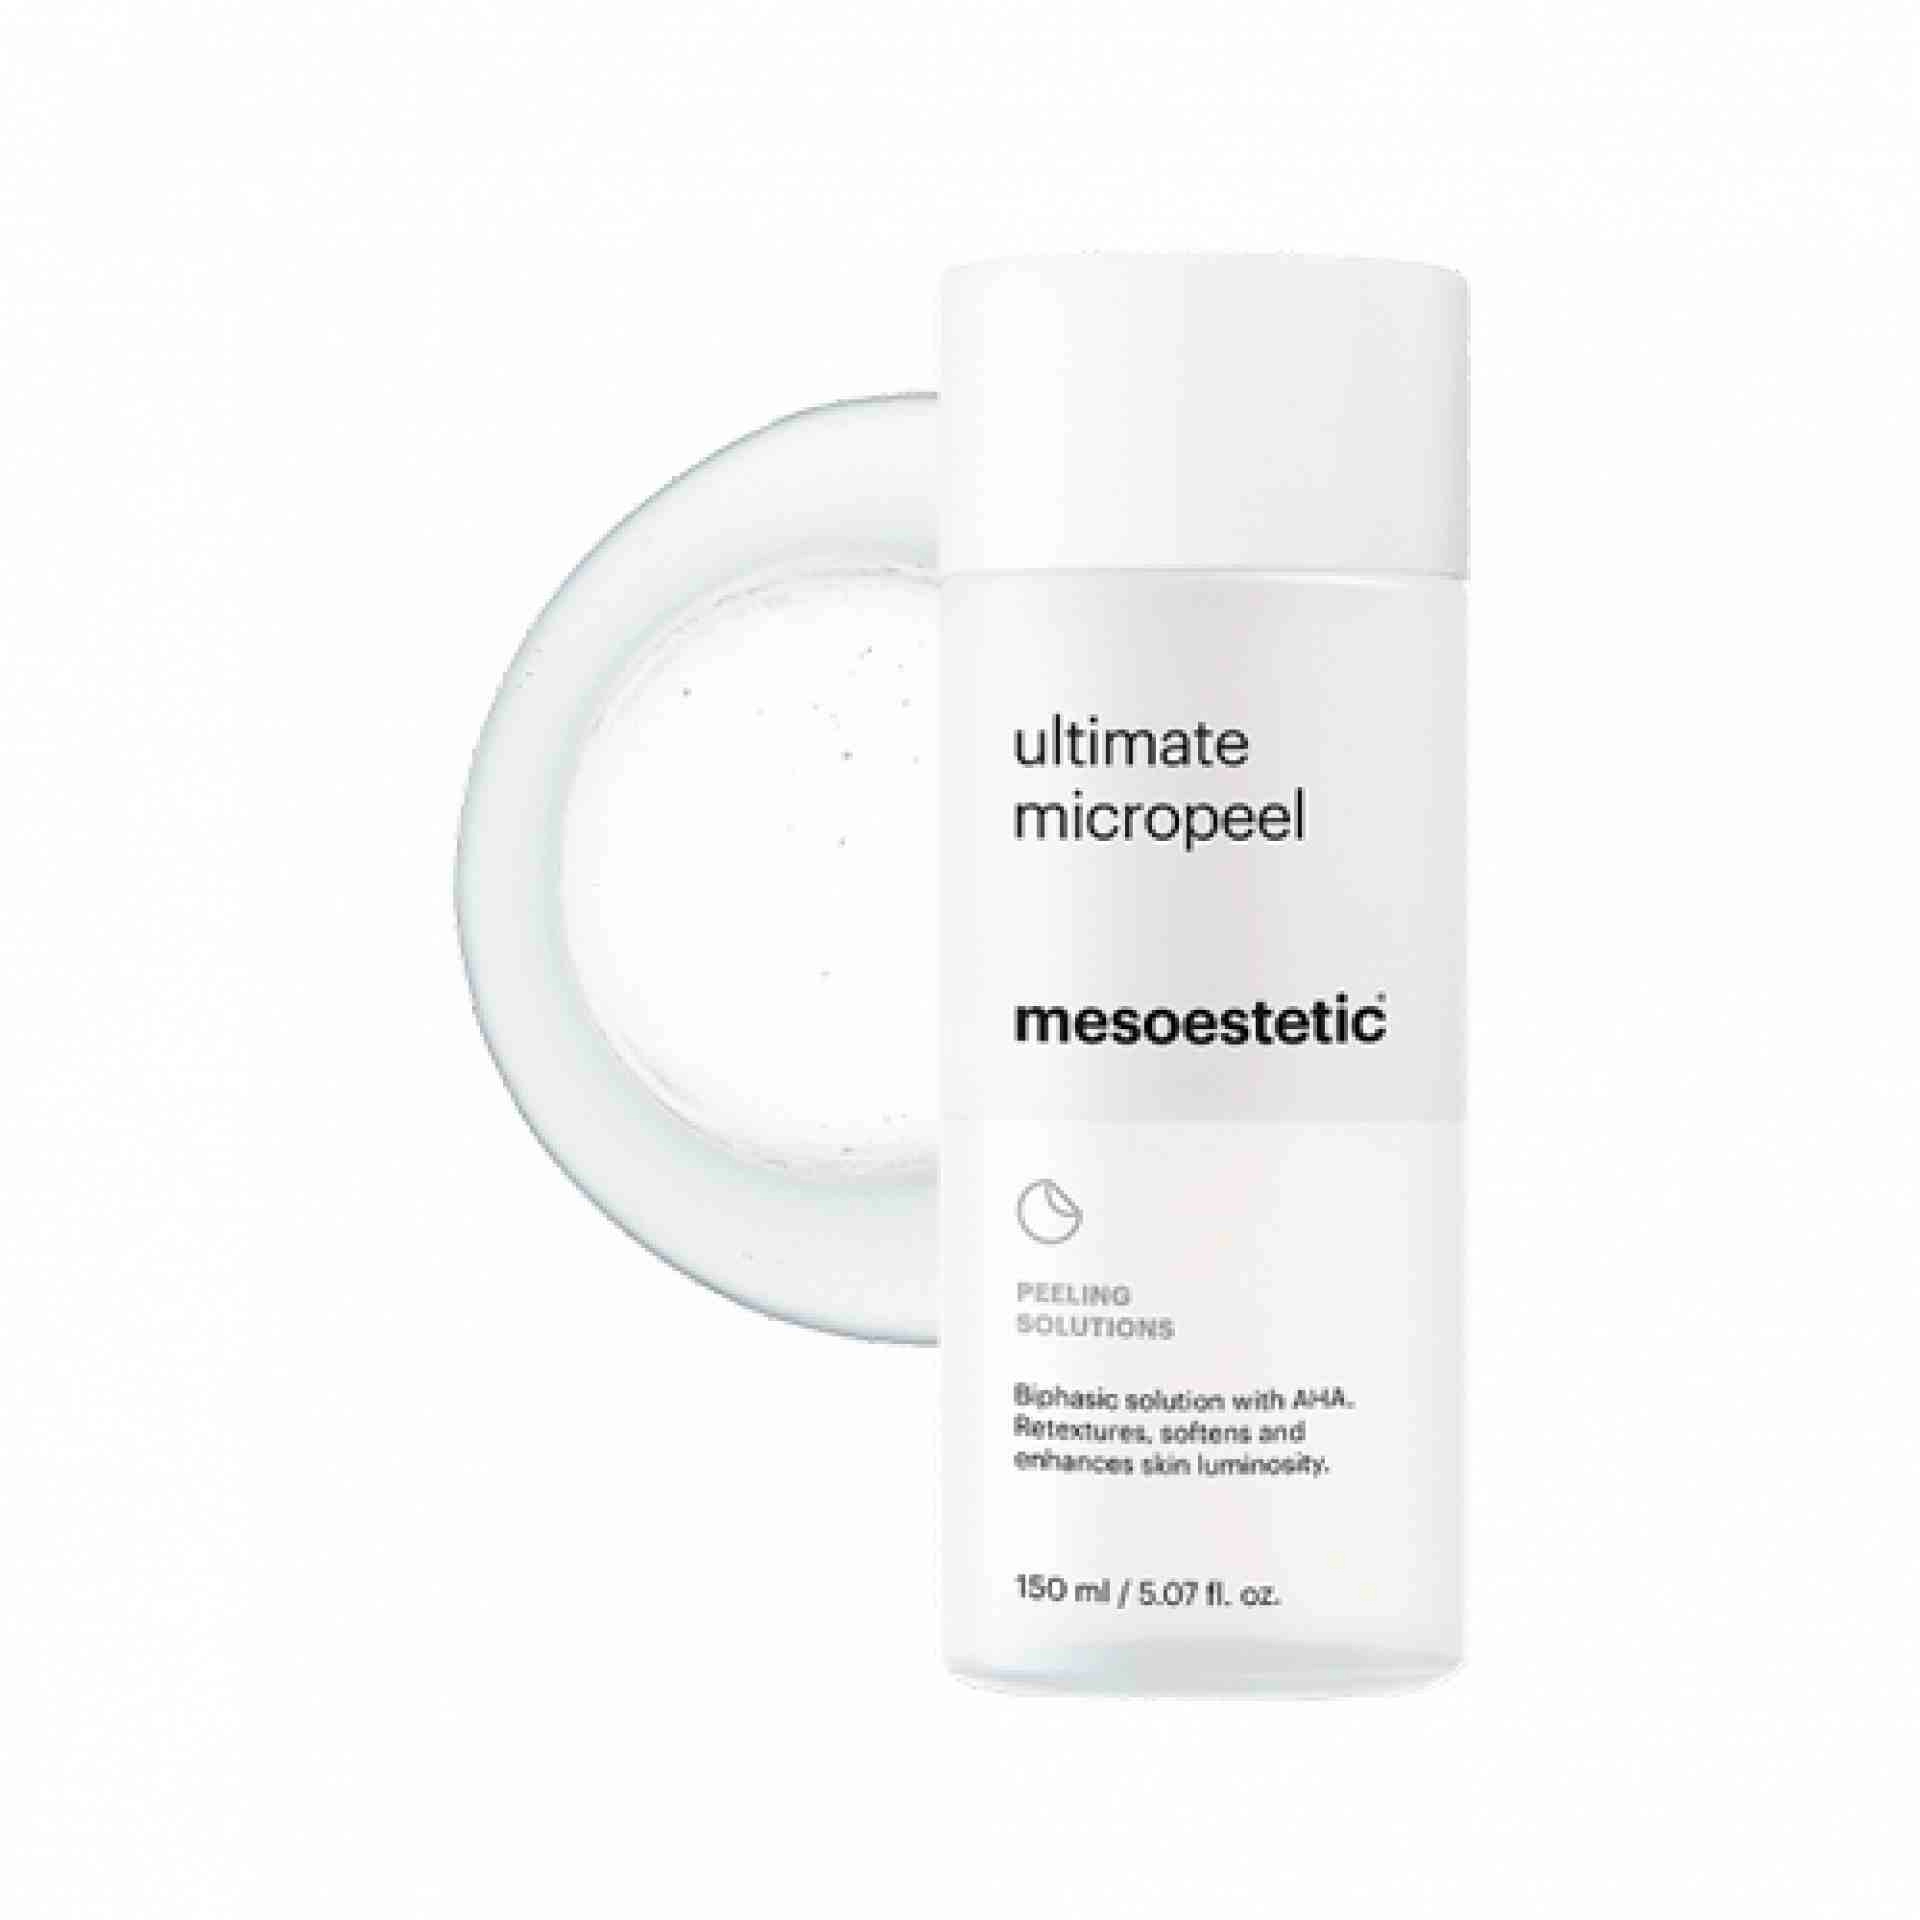 Ultimate Micropeel | Exfoliante 150ml - Peeling Solutions - Mesoestetic ®